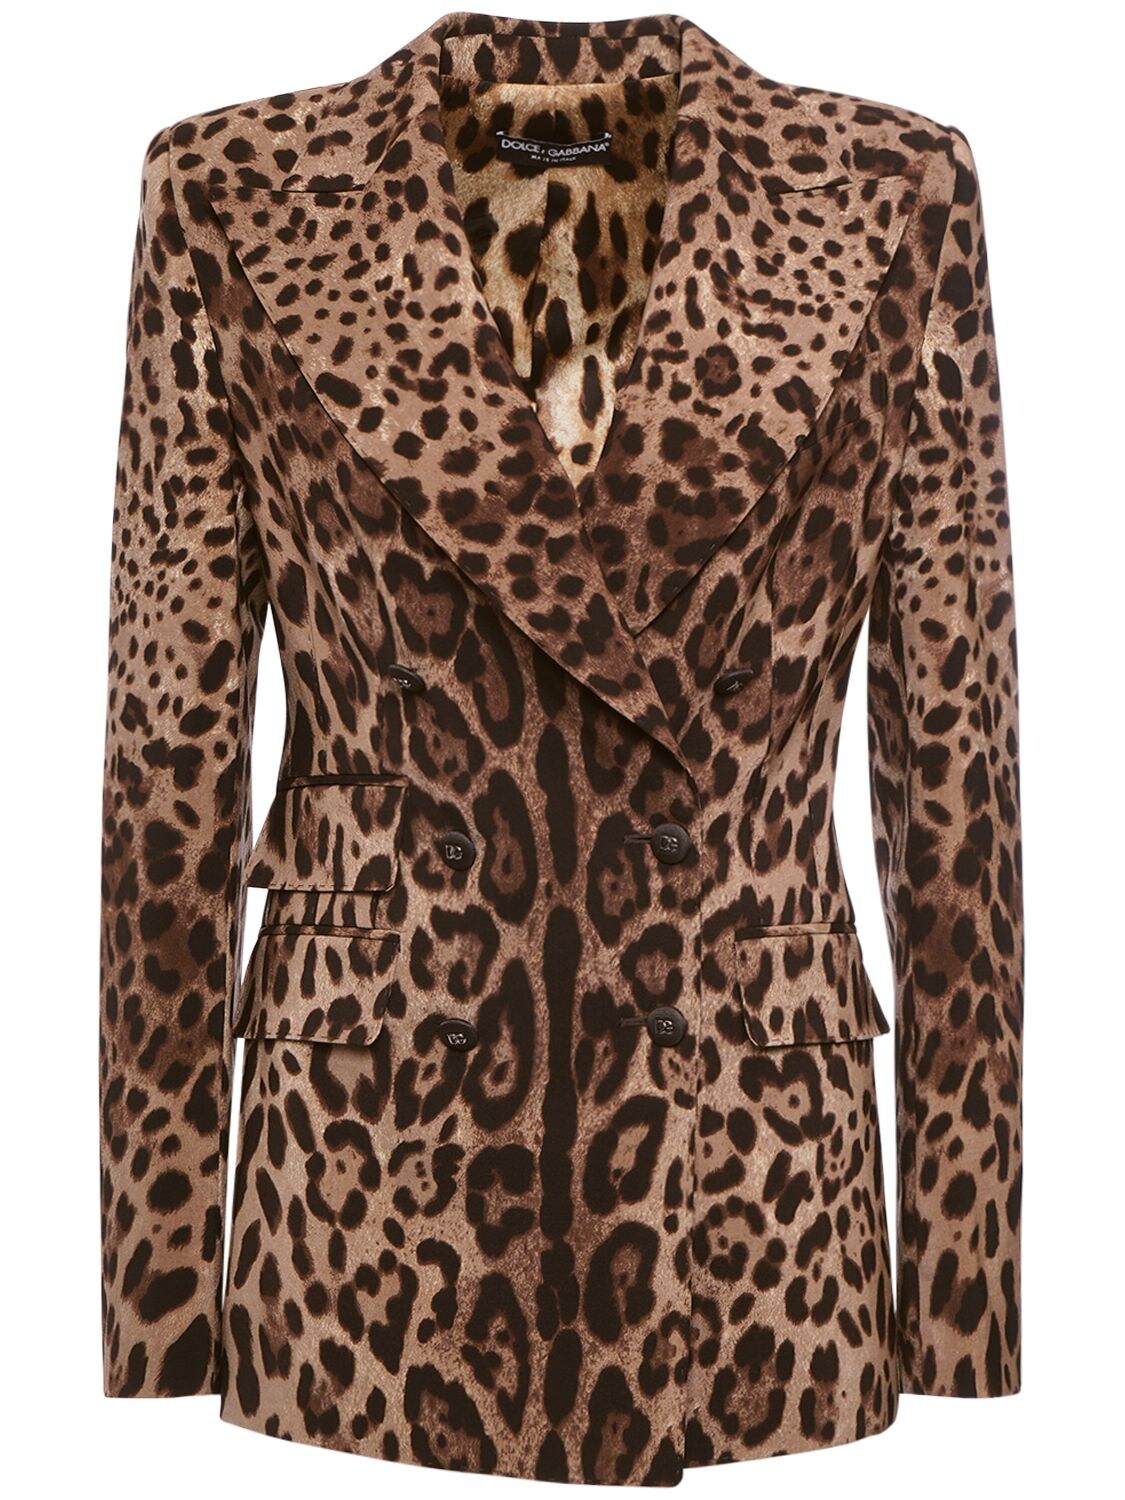 Image of Leopard Printed Wool Jacket